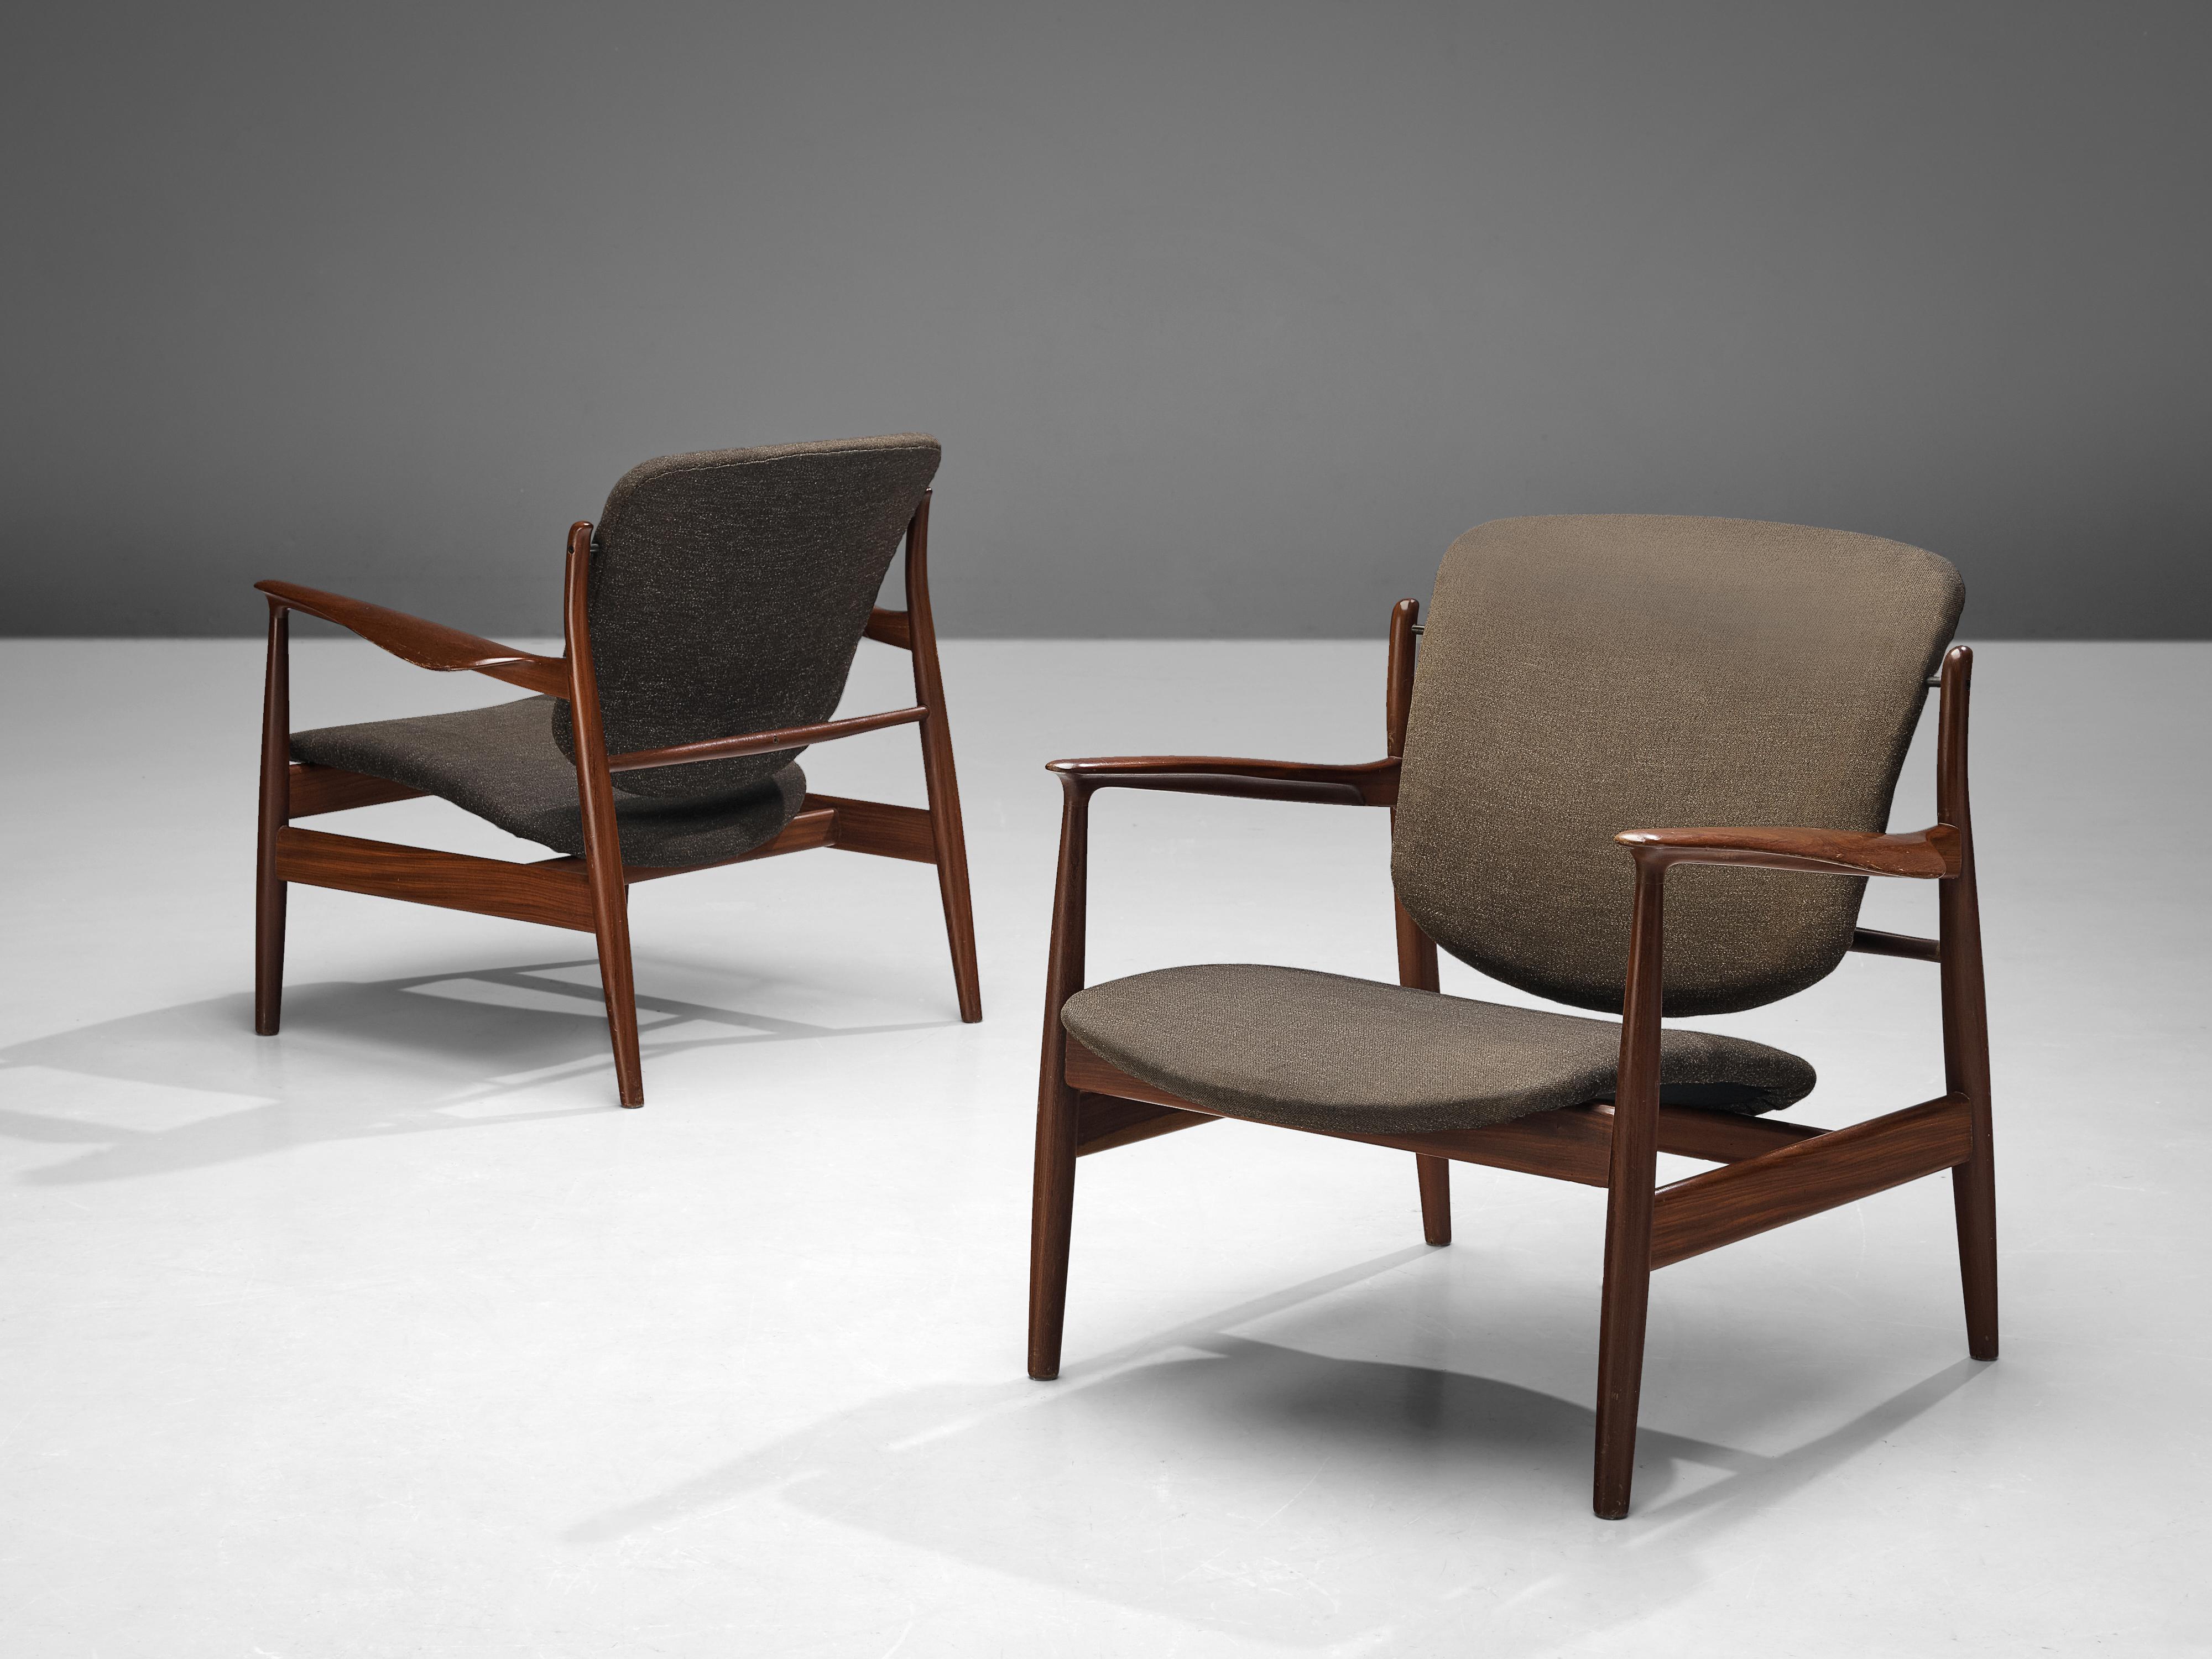 Finn Juhls pour France & Søn, paire de chaises longues modèle précoce '136', teck, tissu d'ameublement, Danemark, 1959. 

Un design très honnête et ouvert de l'architecte et designer danois Finn Juhls. Comme beaucoup de ses créations, cette chaise